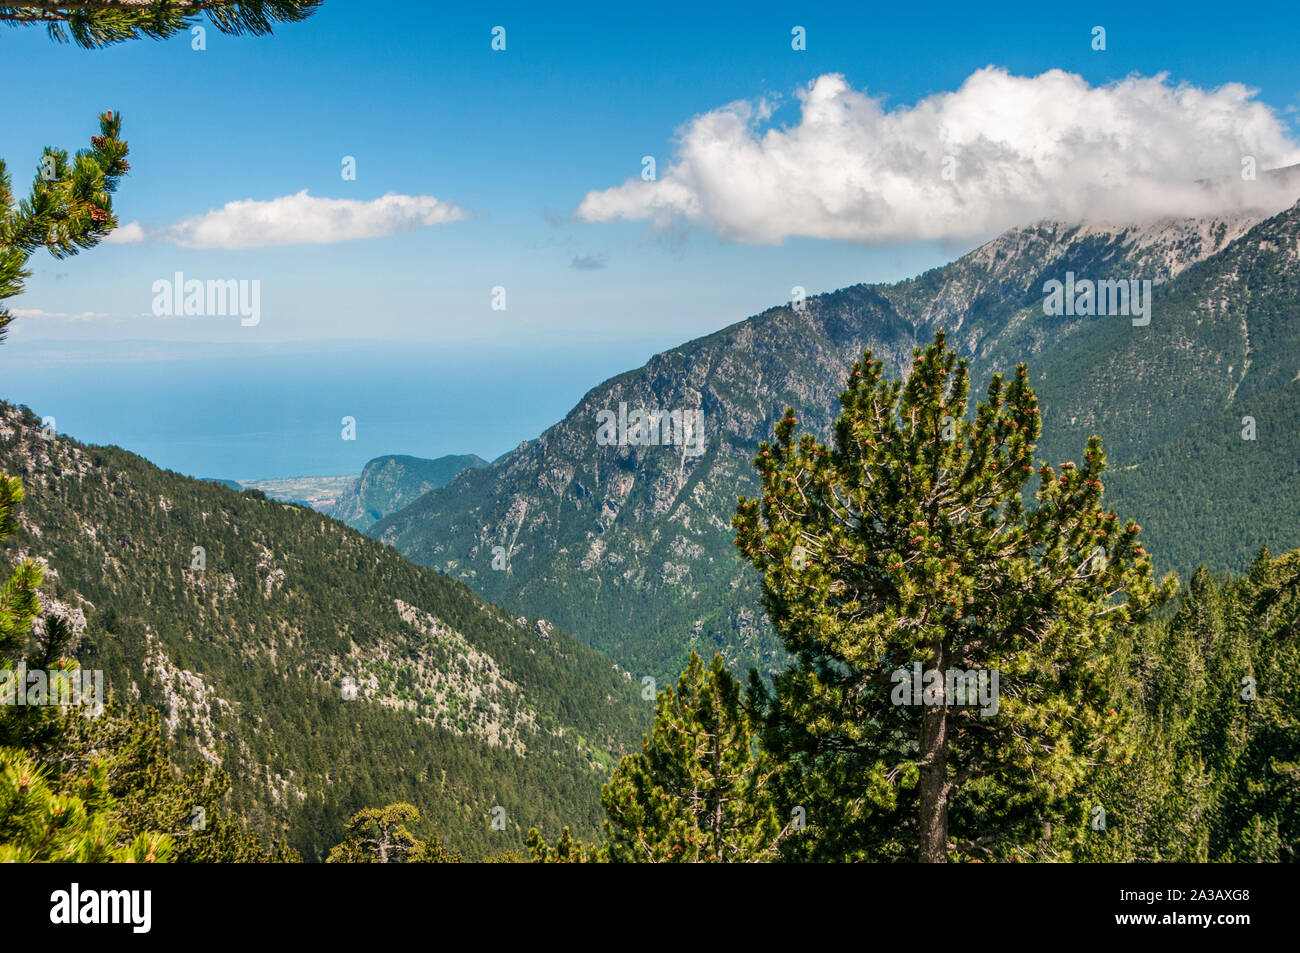 Blick von der Europäischen Wanderweg E4 in Berg Olymp in Griechenland  Stockfotografie - Alamy